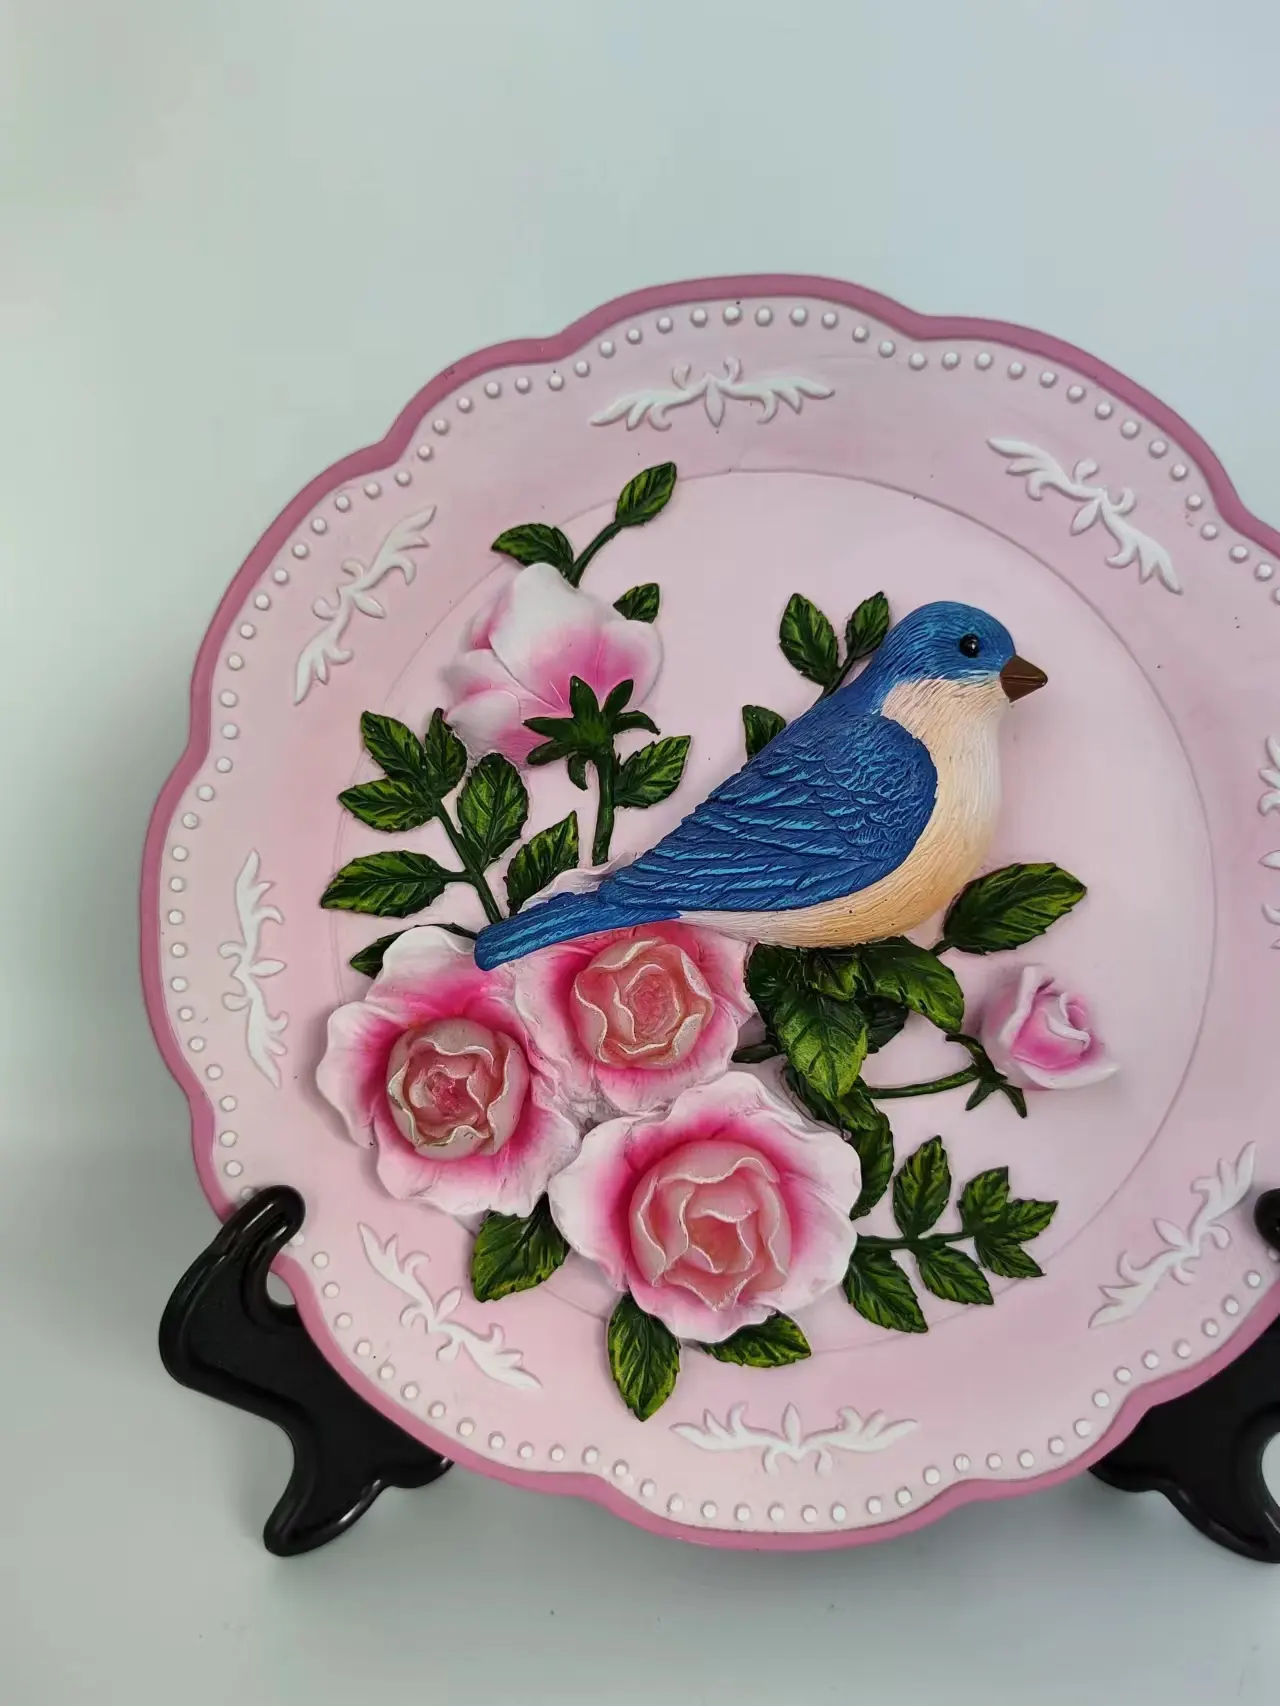 Vendita calda ornamento in resina fiore rosa tema piatto ornamento regali personalizzati articoli souvenir regali